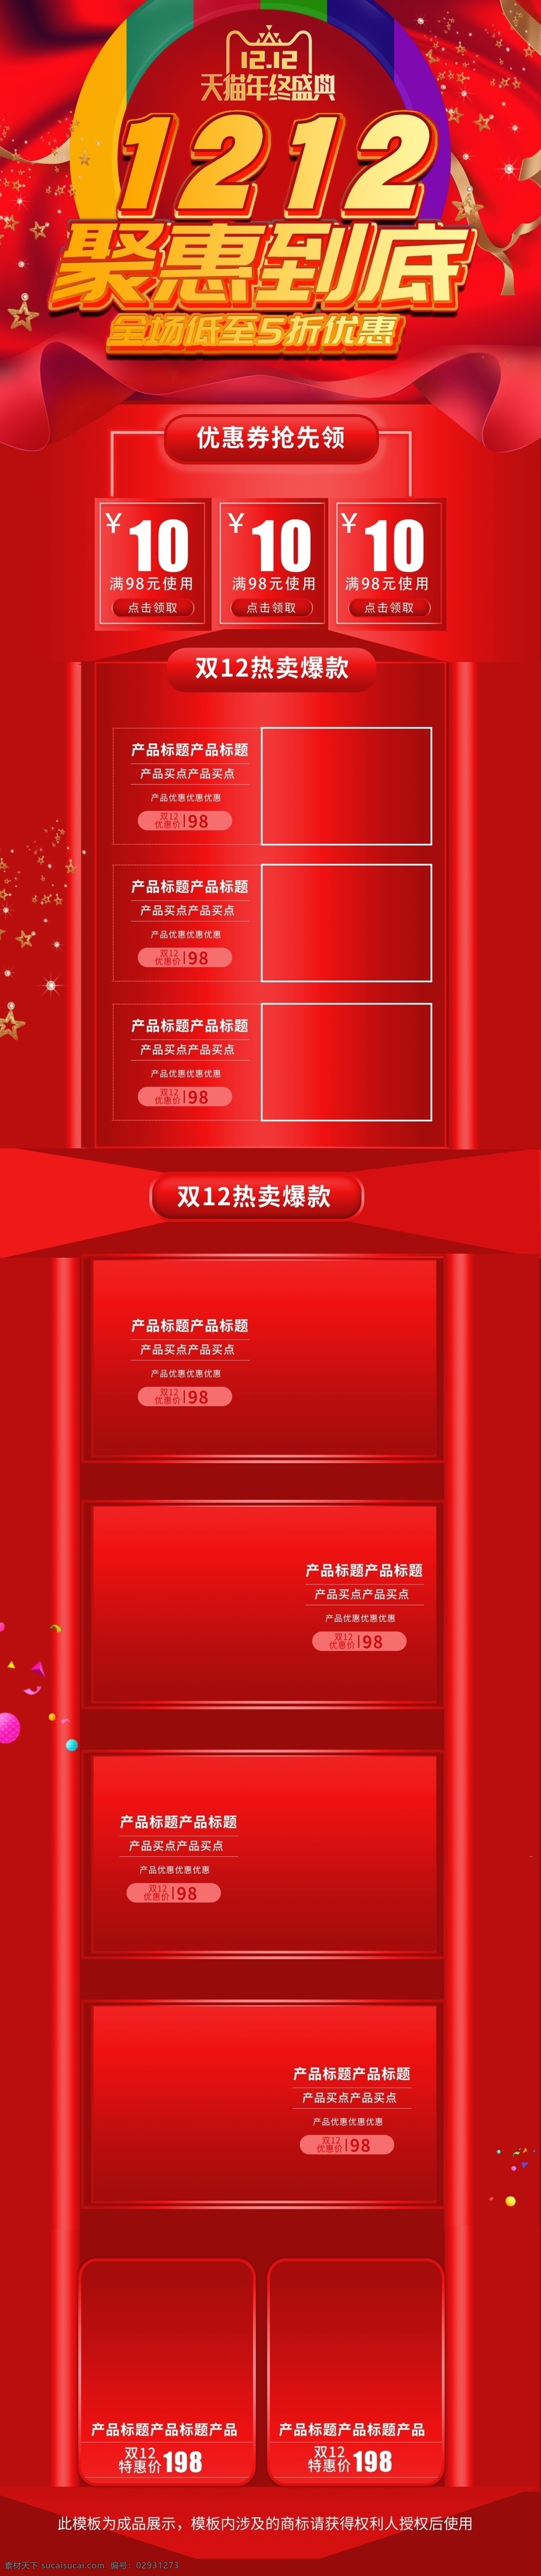 双 年终 狂欢 全 屏 首页 促销 模板 双12 红色 年终盛典 全屏